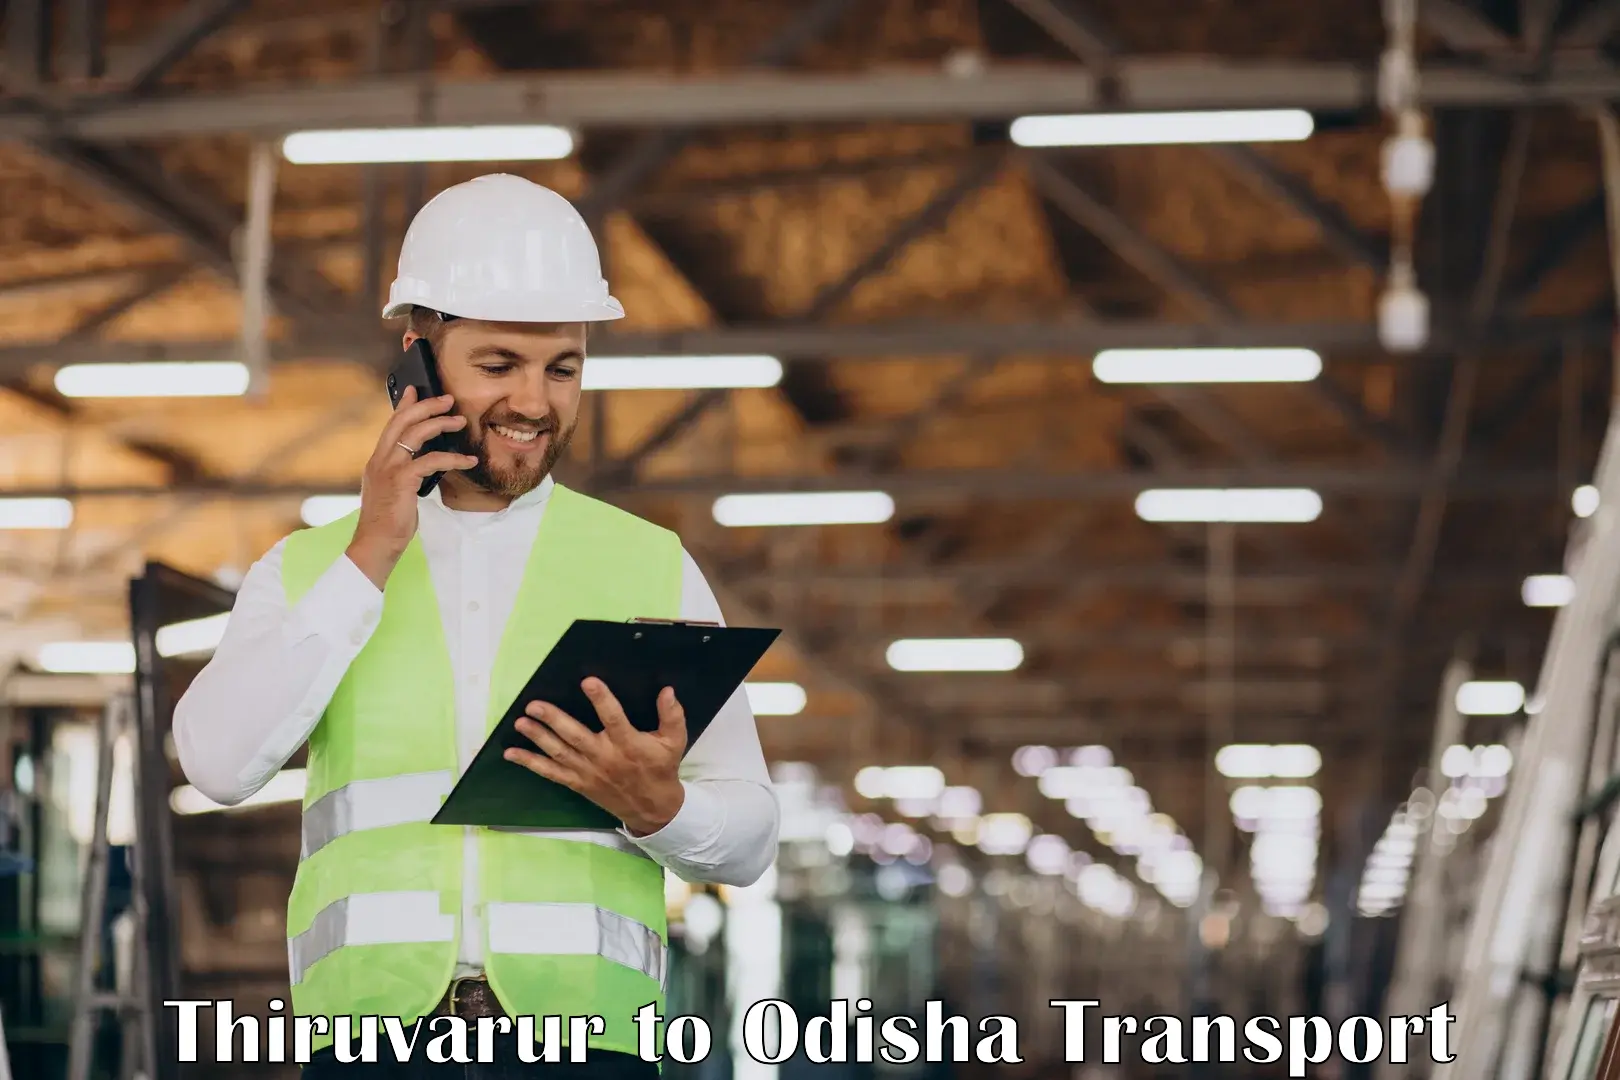 Cargo transport services in Thiruvarur to Bahalda